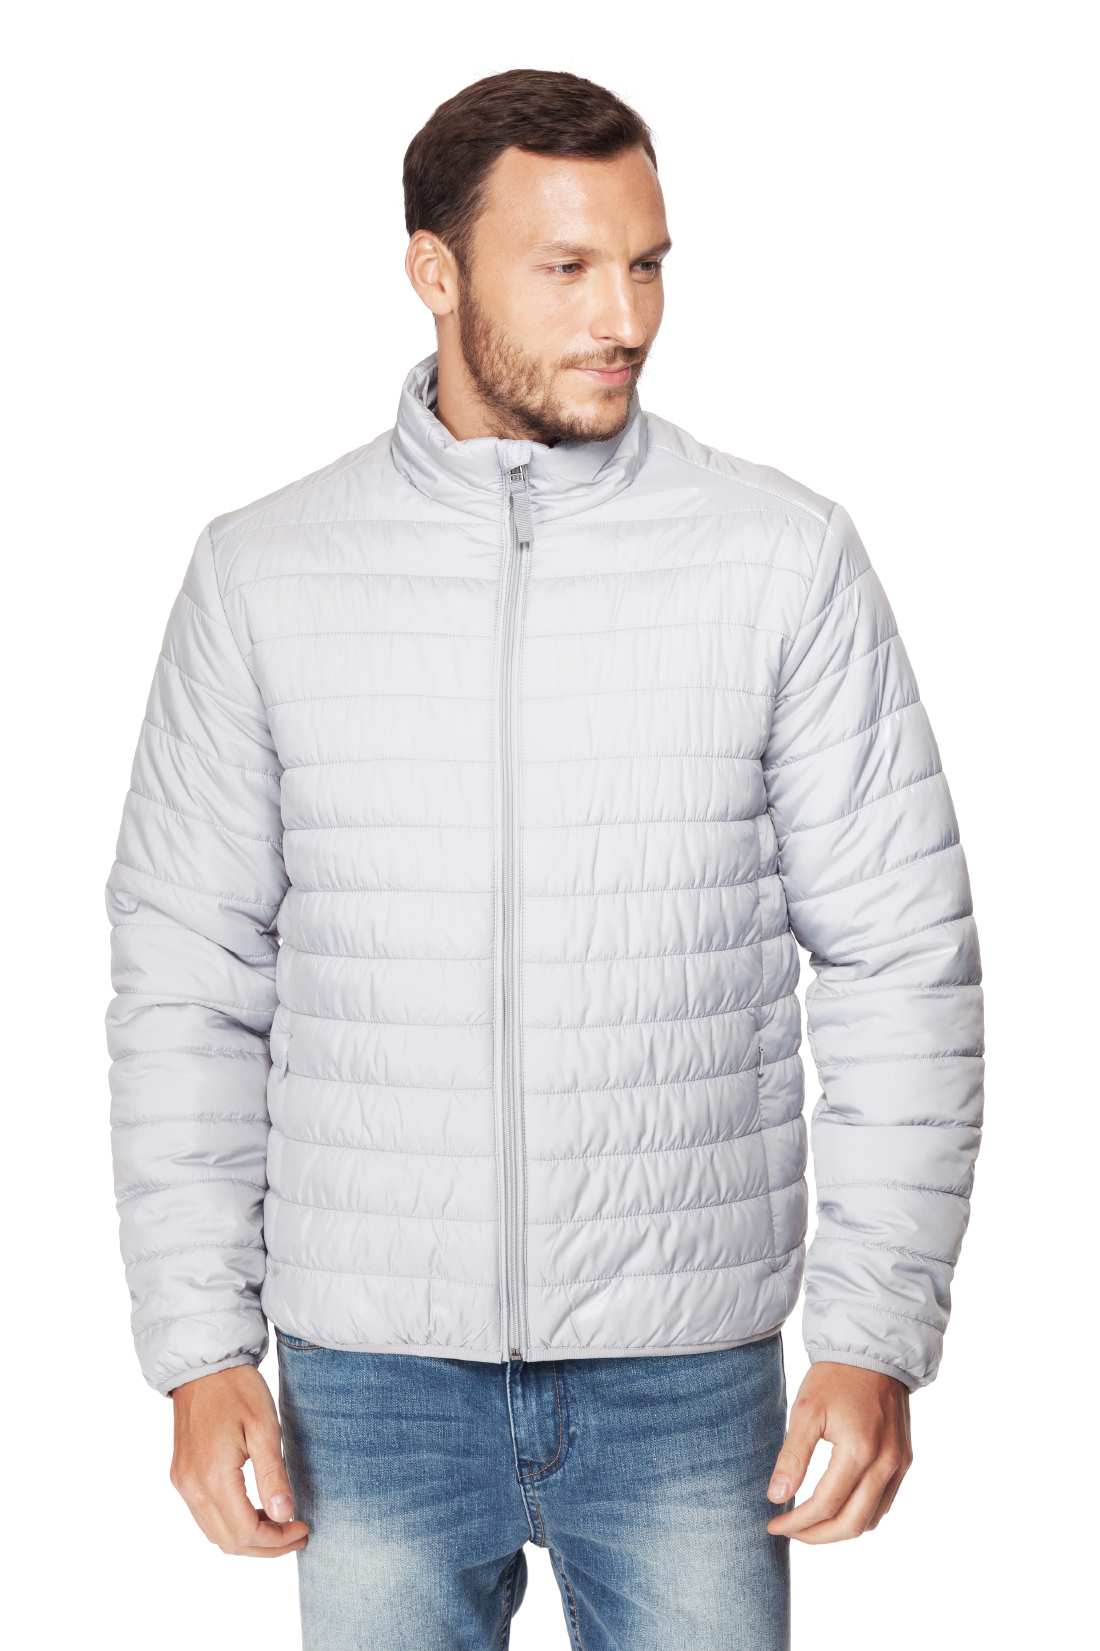 Базовая куртка на молнии (арт. baon B537201), размер M, цвет белый Базовая куртка на молнии (арт. baon B537201) - фото 1